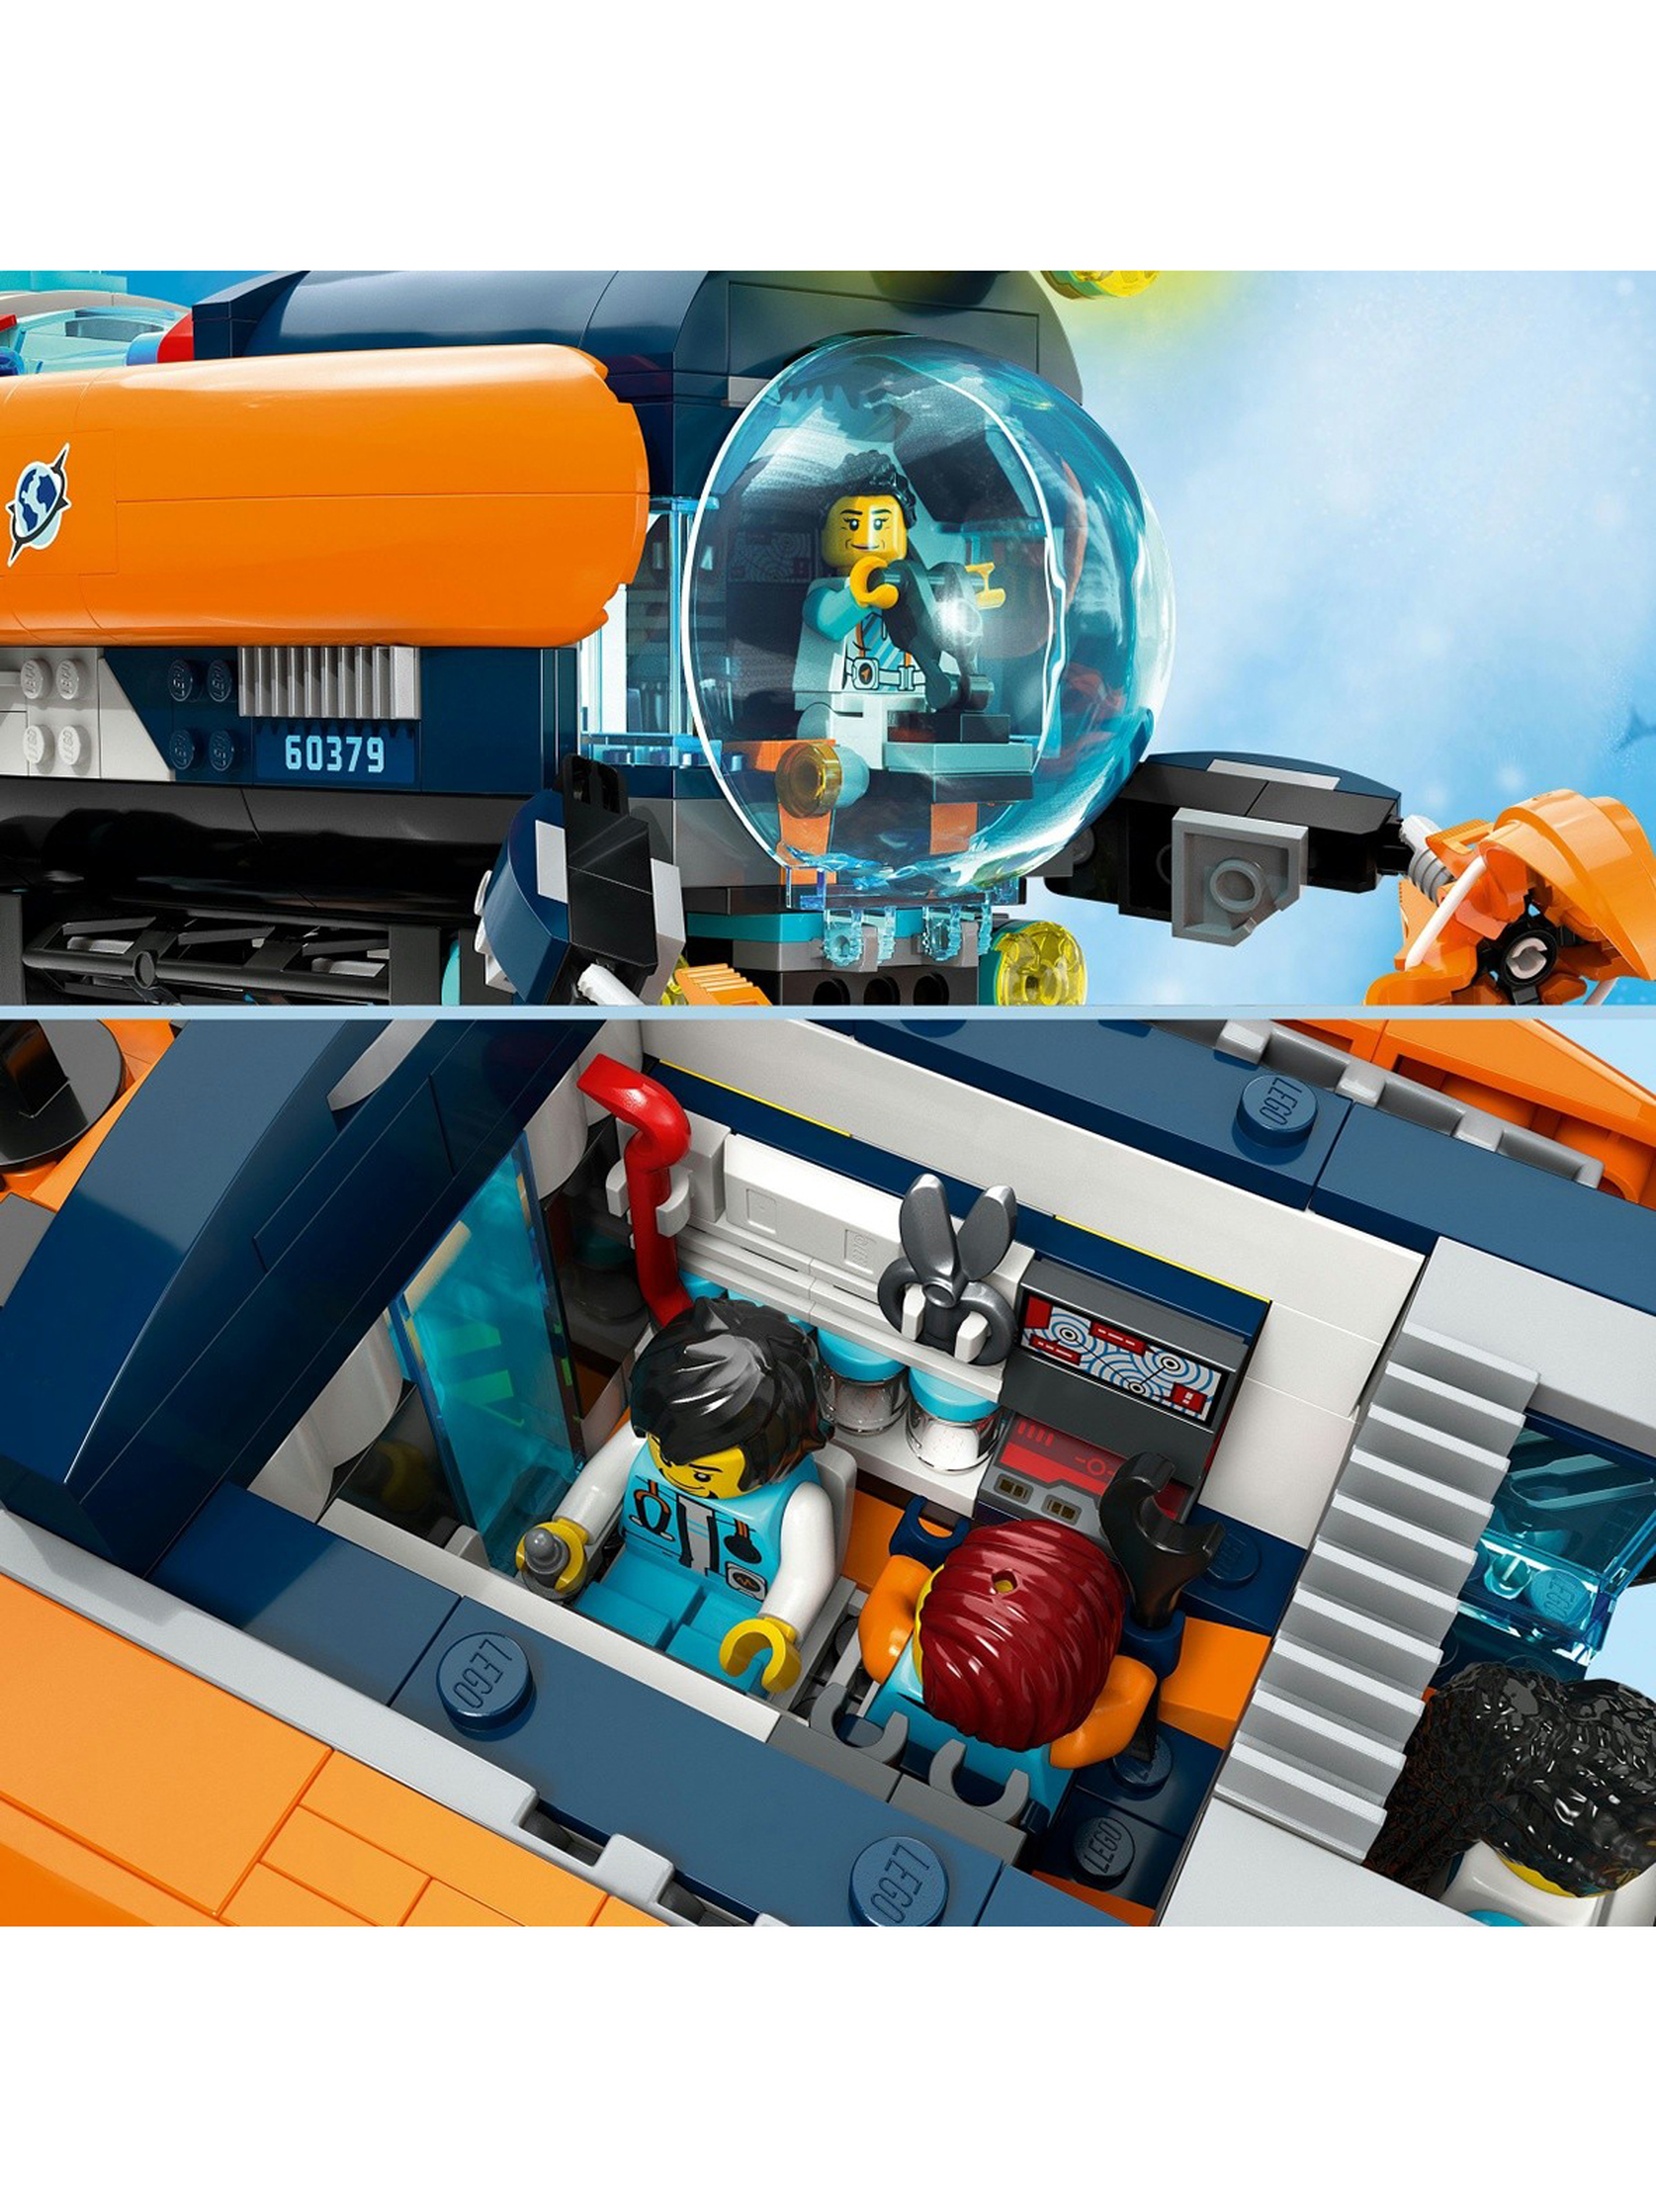 Klocki LEGO City 60379 Łódź podwodna badacza dna morskiego - 842 elementy, wiek 7 +